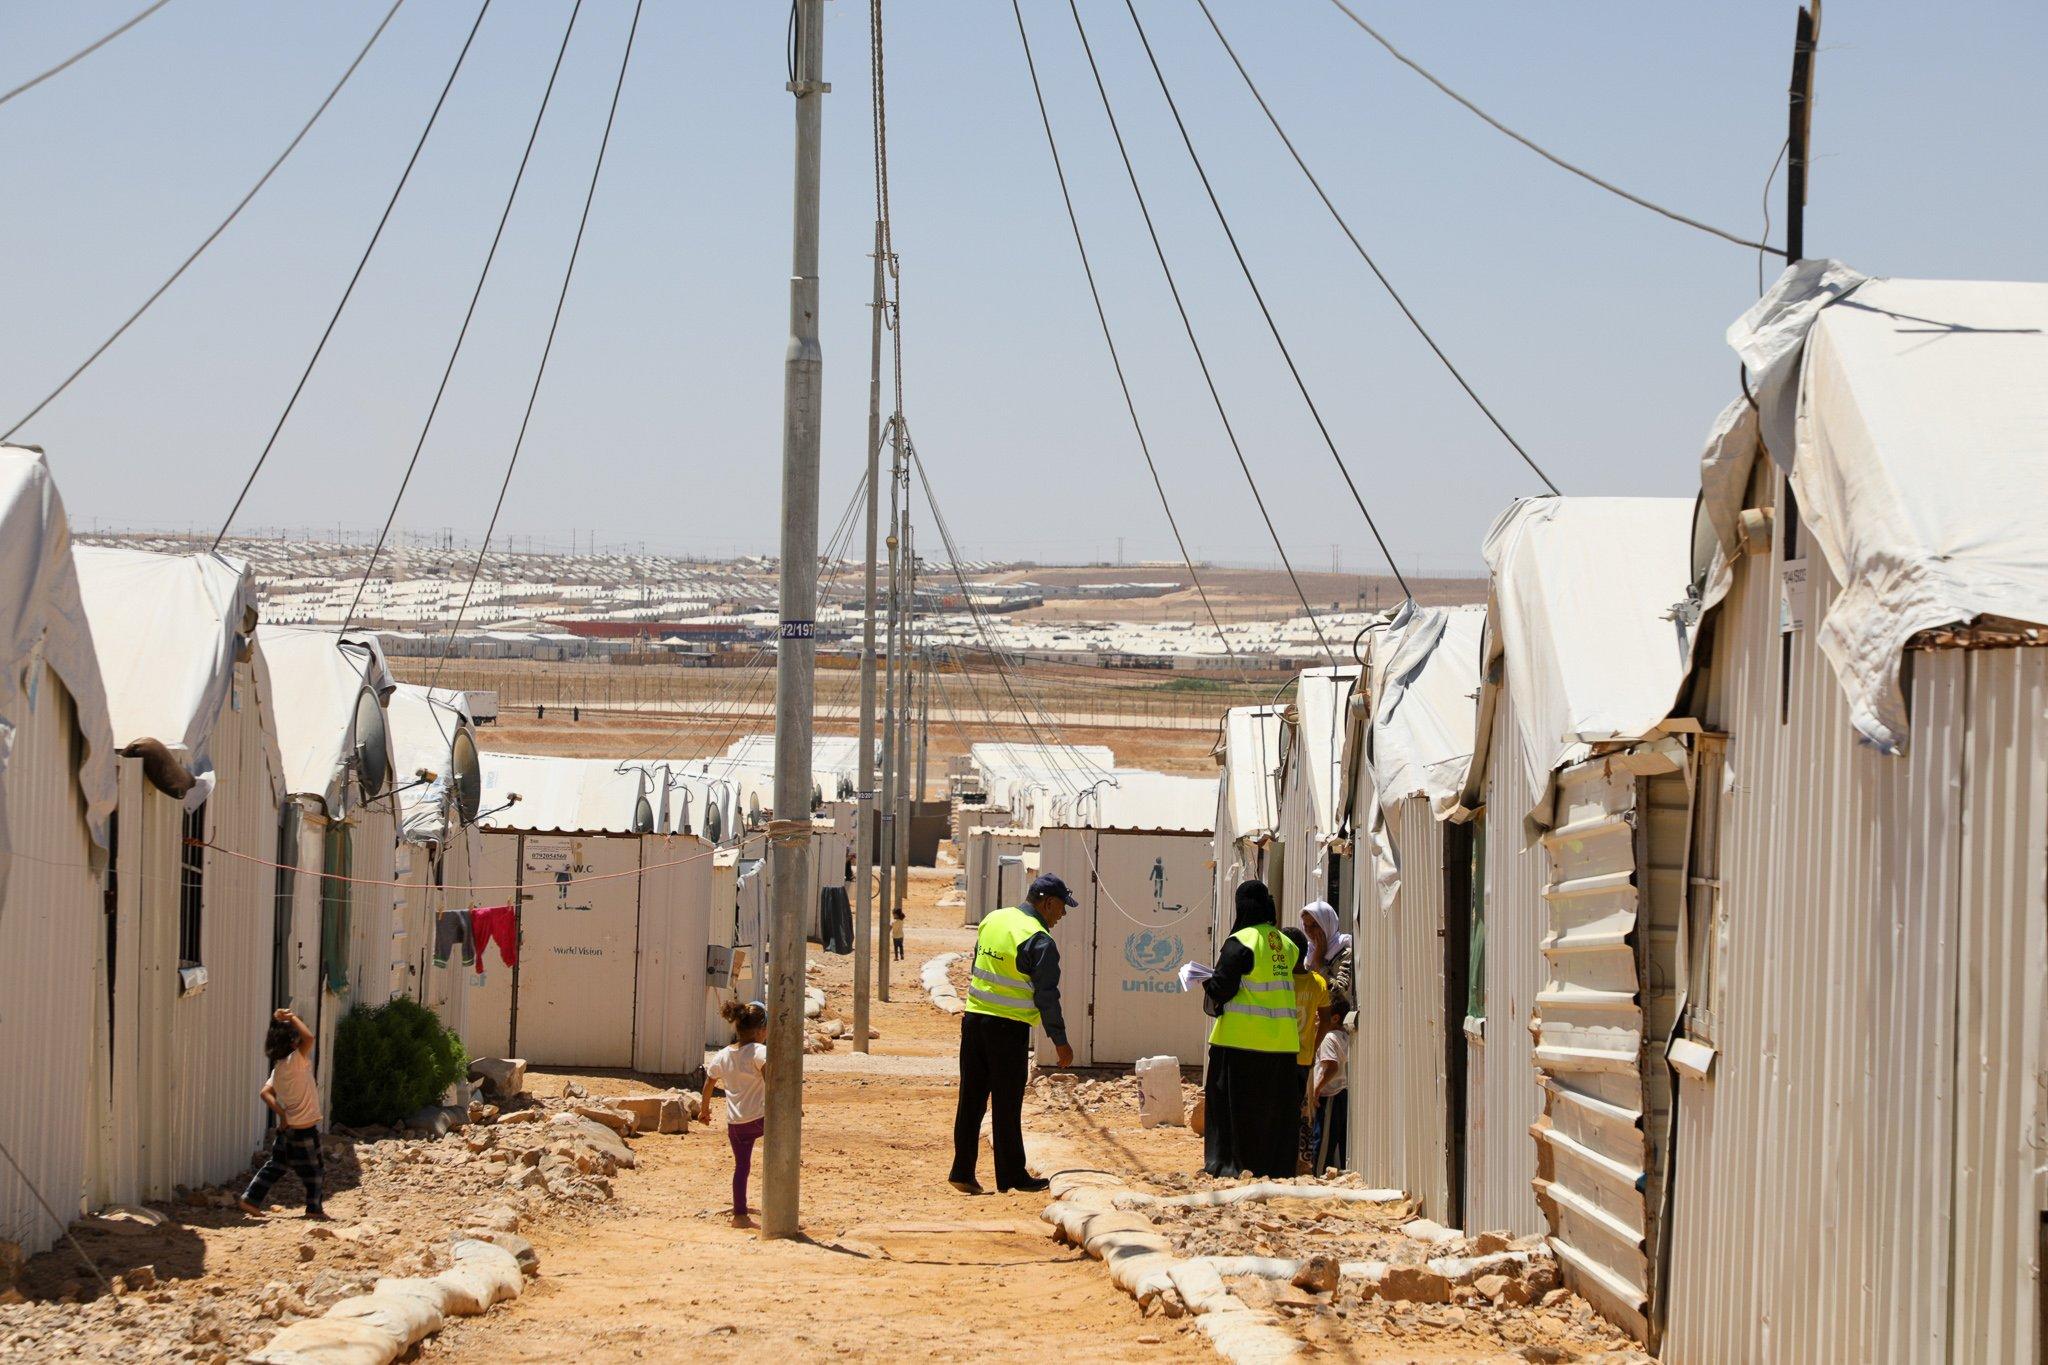 أنفقت الأمم المتحدة نحو 482 مليون دولار خصّصتها لتأمين احتياجات لاجئين ونازحين سوريين في سوريا ودول جوارها. (مخيم الأزرق للاجئين. مكتب مفوضية الأمم المتحدة في الأردن)